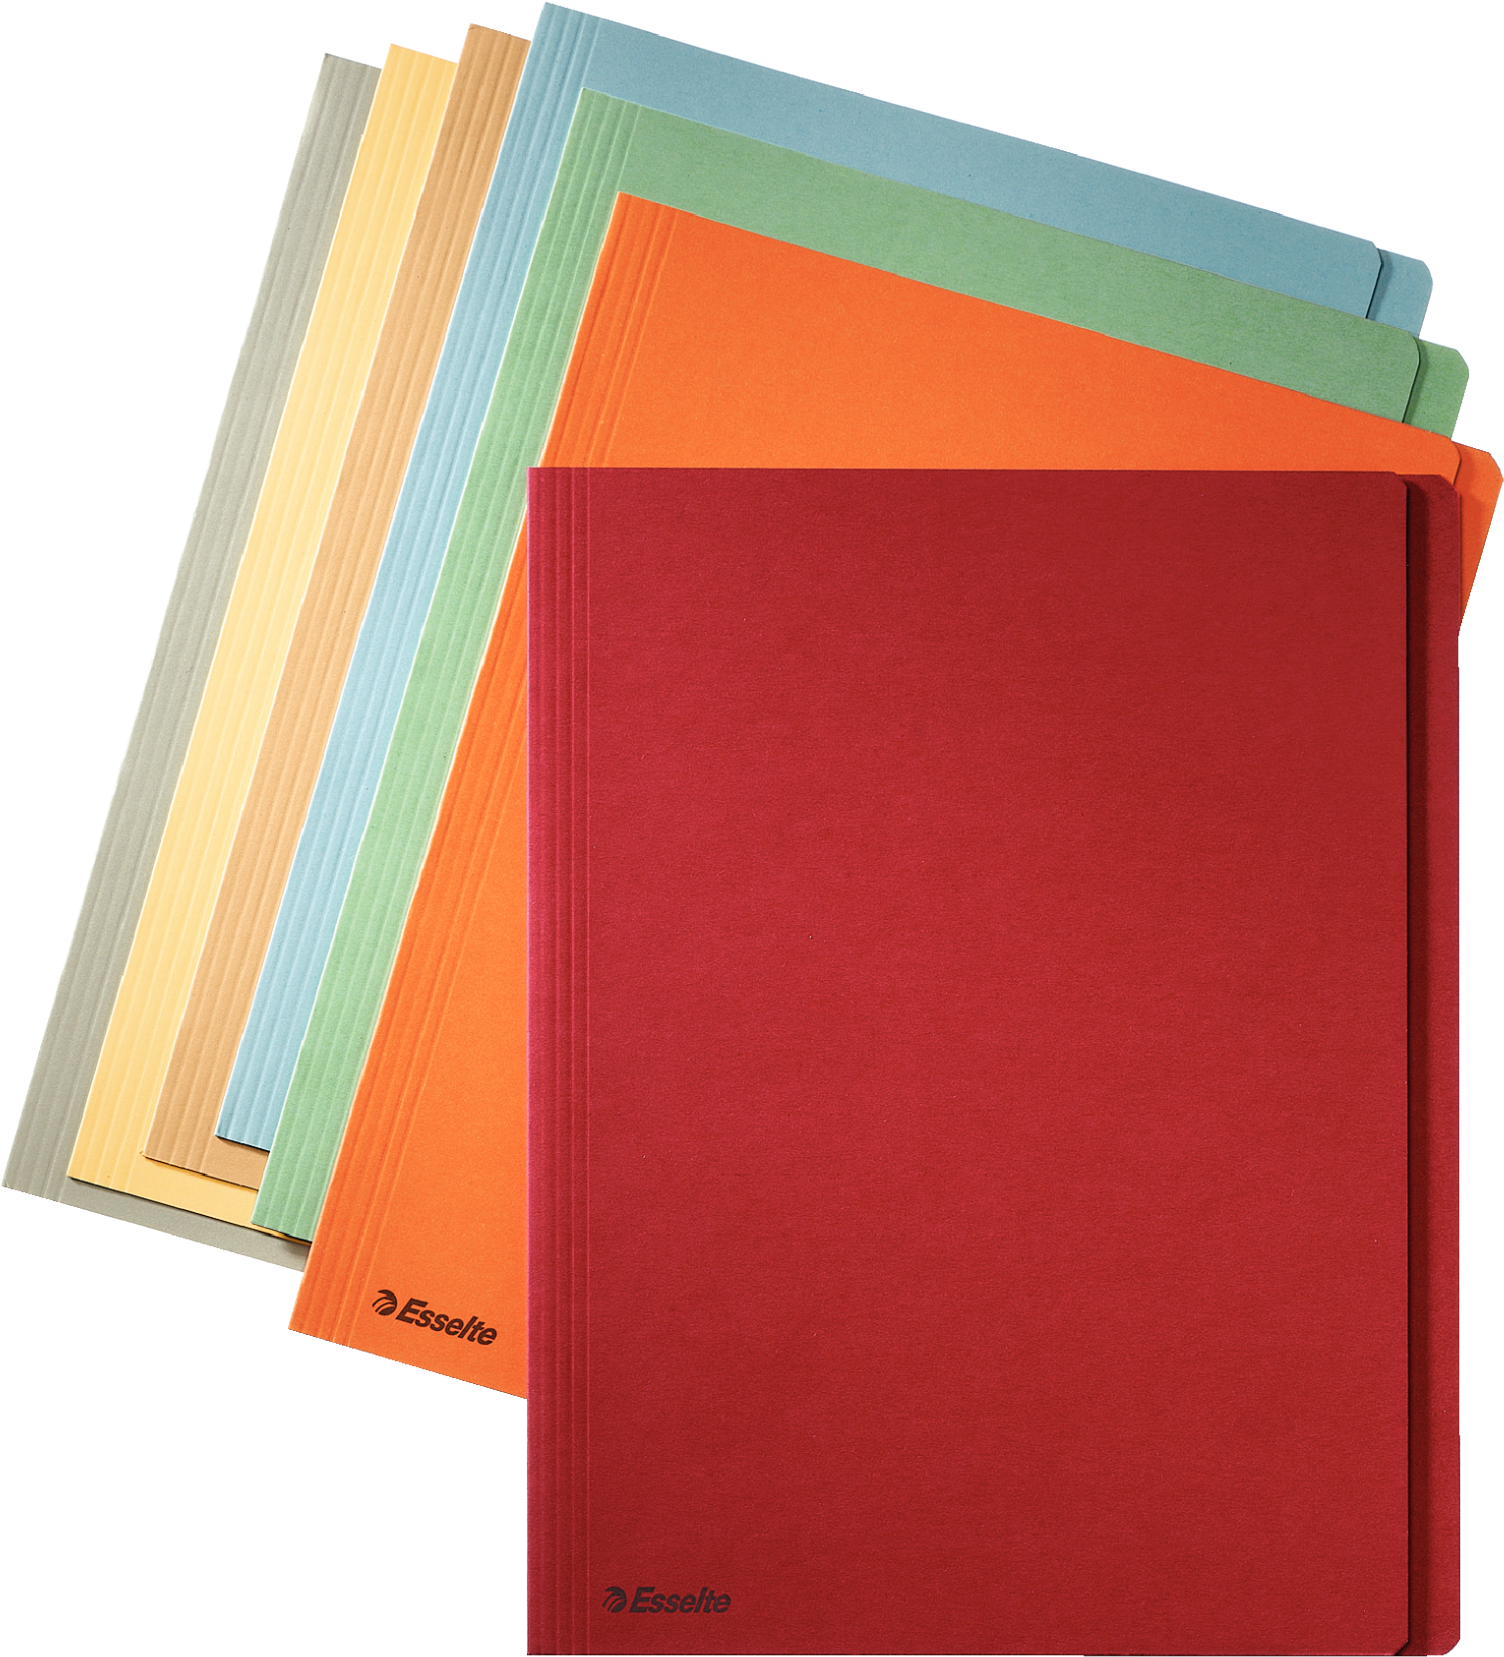 Esselte Manilla Insert Folder With Side Tab - Esselte Chemise De Classement Orange, Ft A4 1 Unité(s) (1575x2362), Png Download